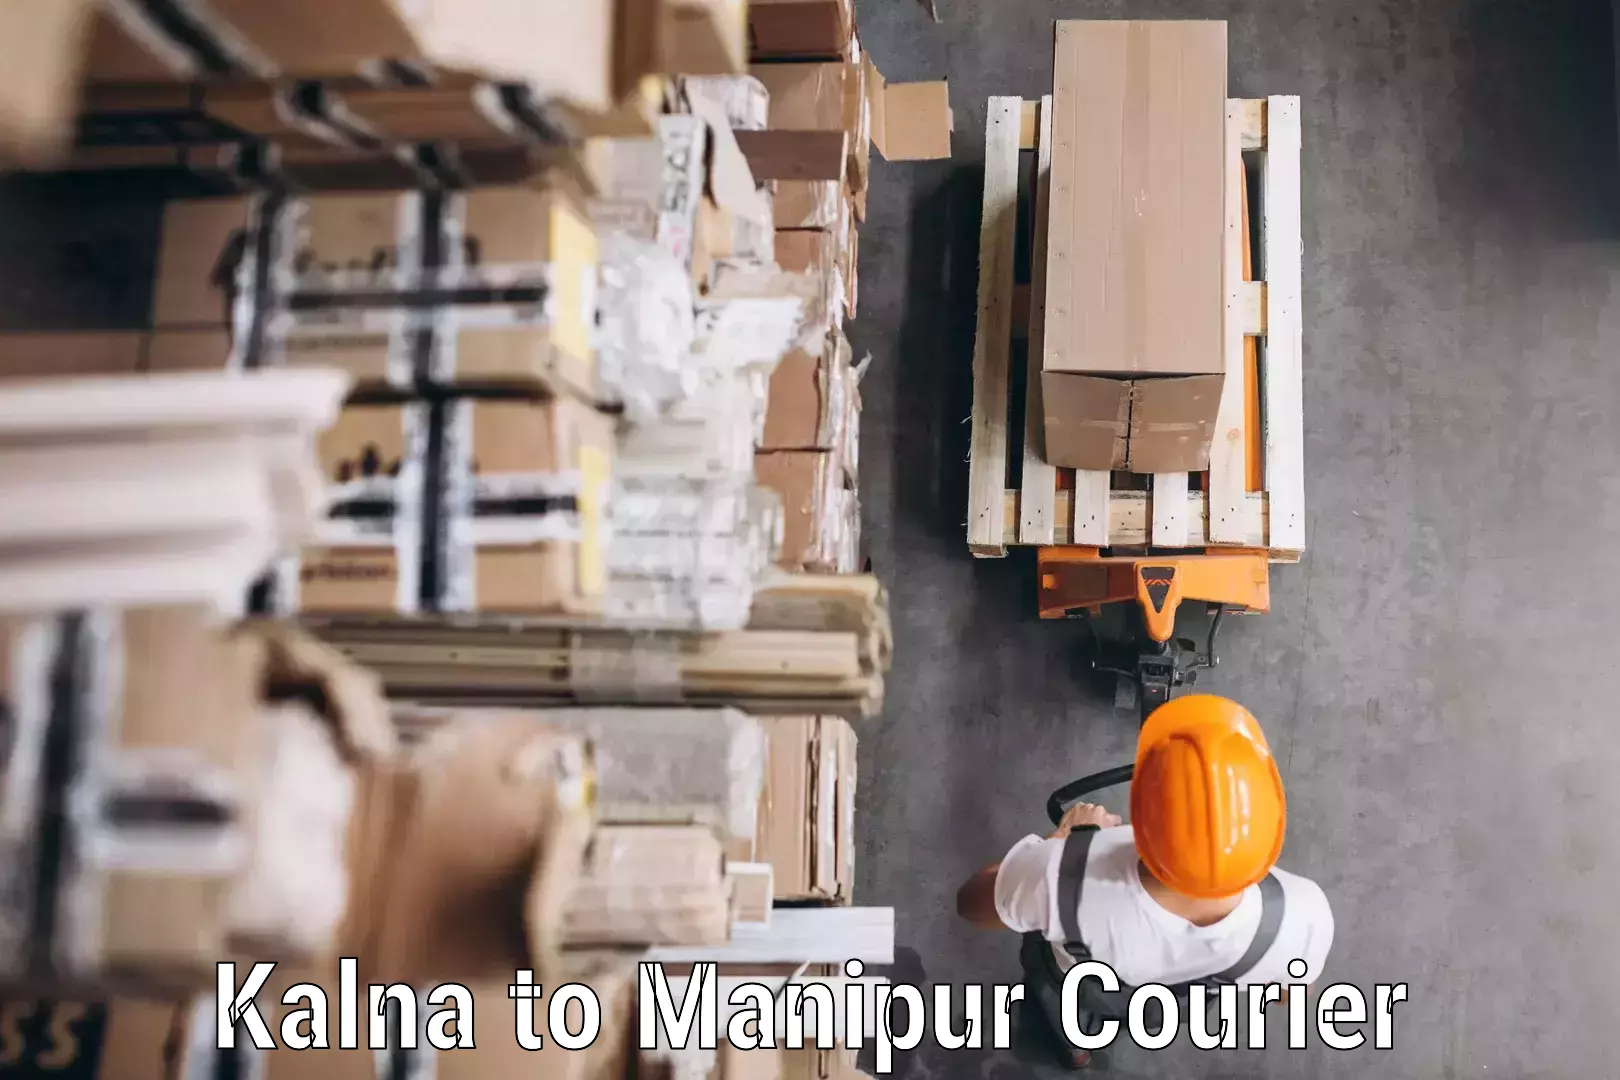 Logistics service provider Kalna to Kaptipada